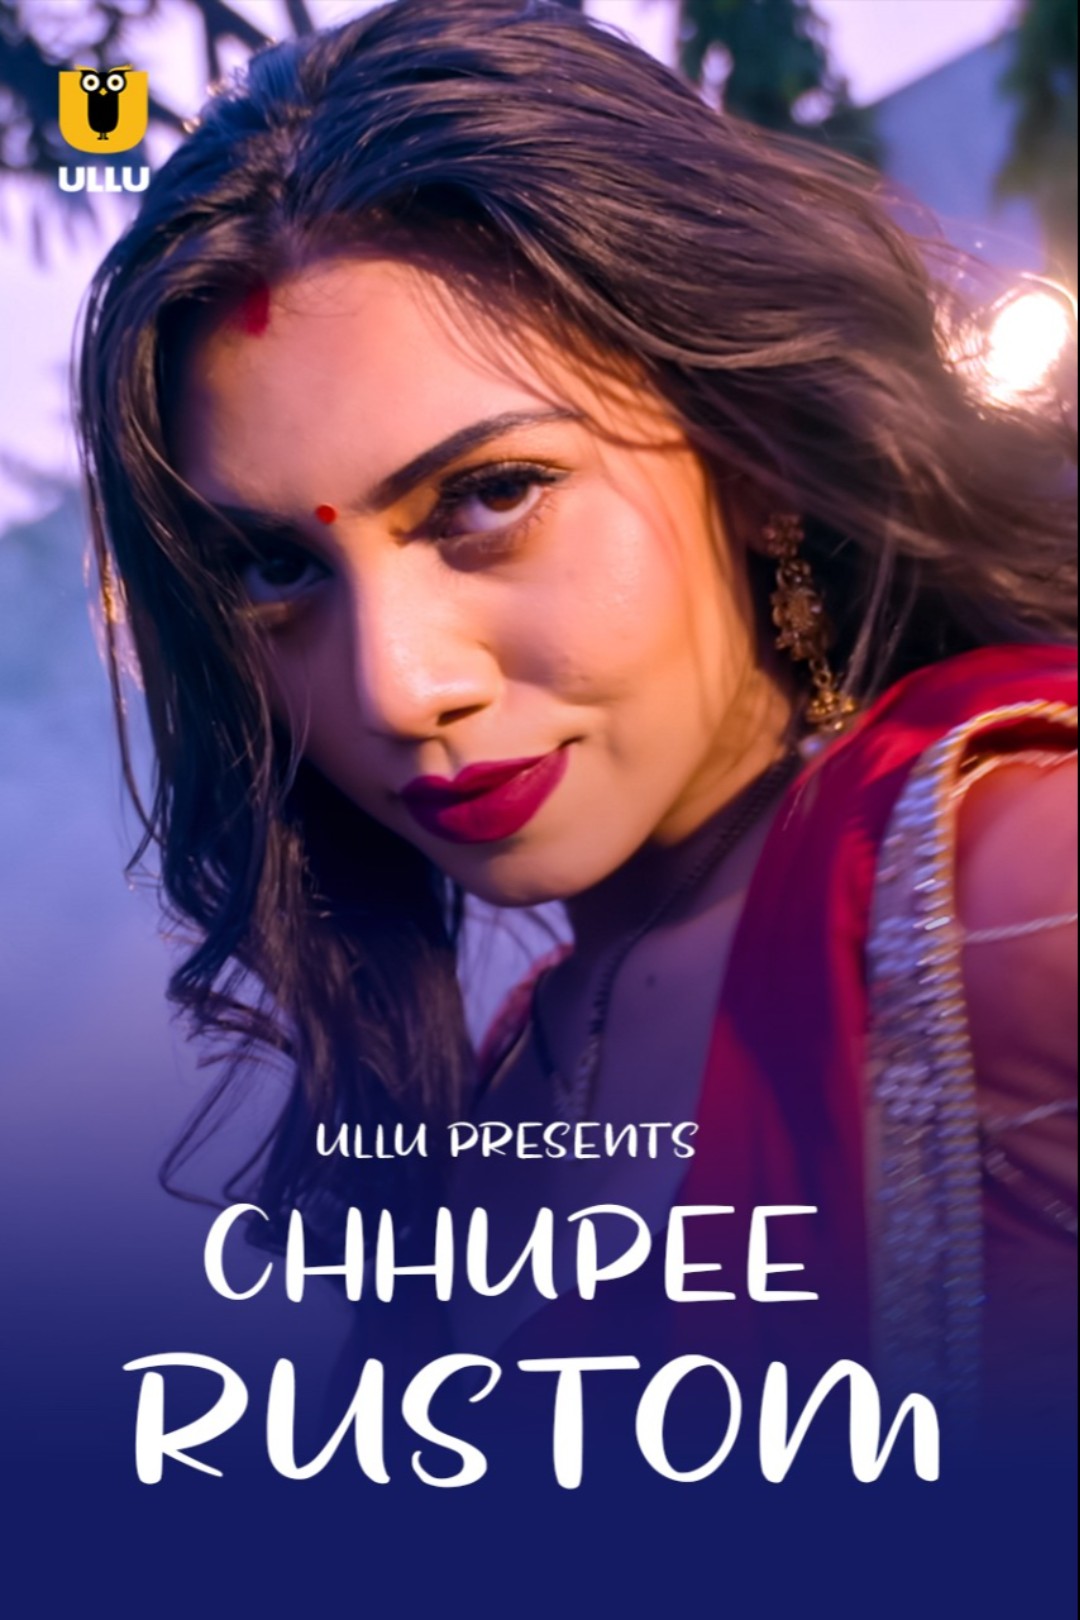 Chhupee Rustom (2021) Season 1 Ullu Originals